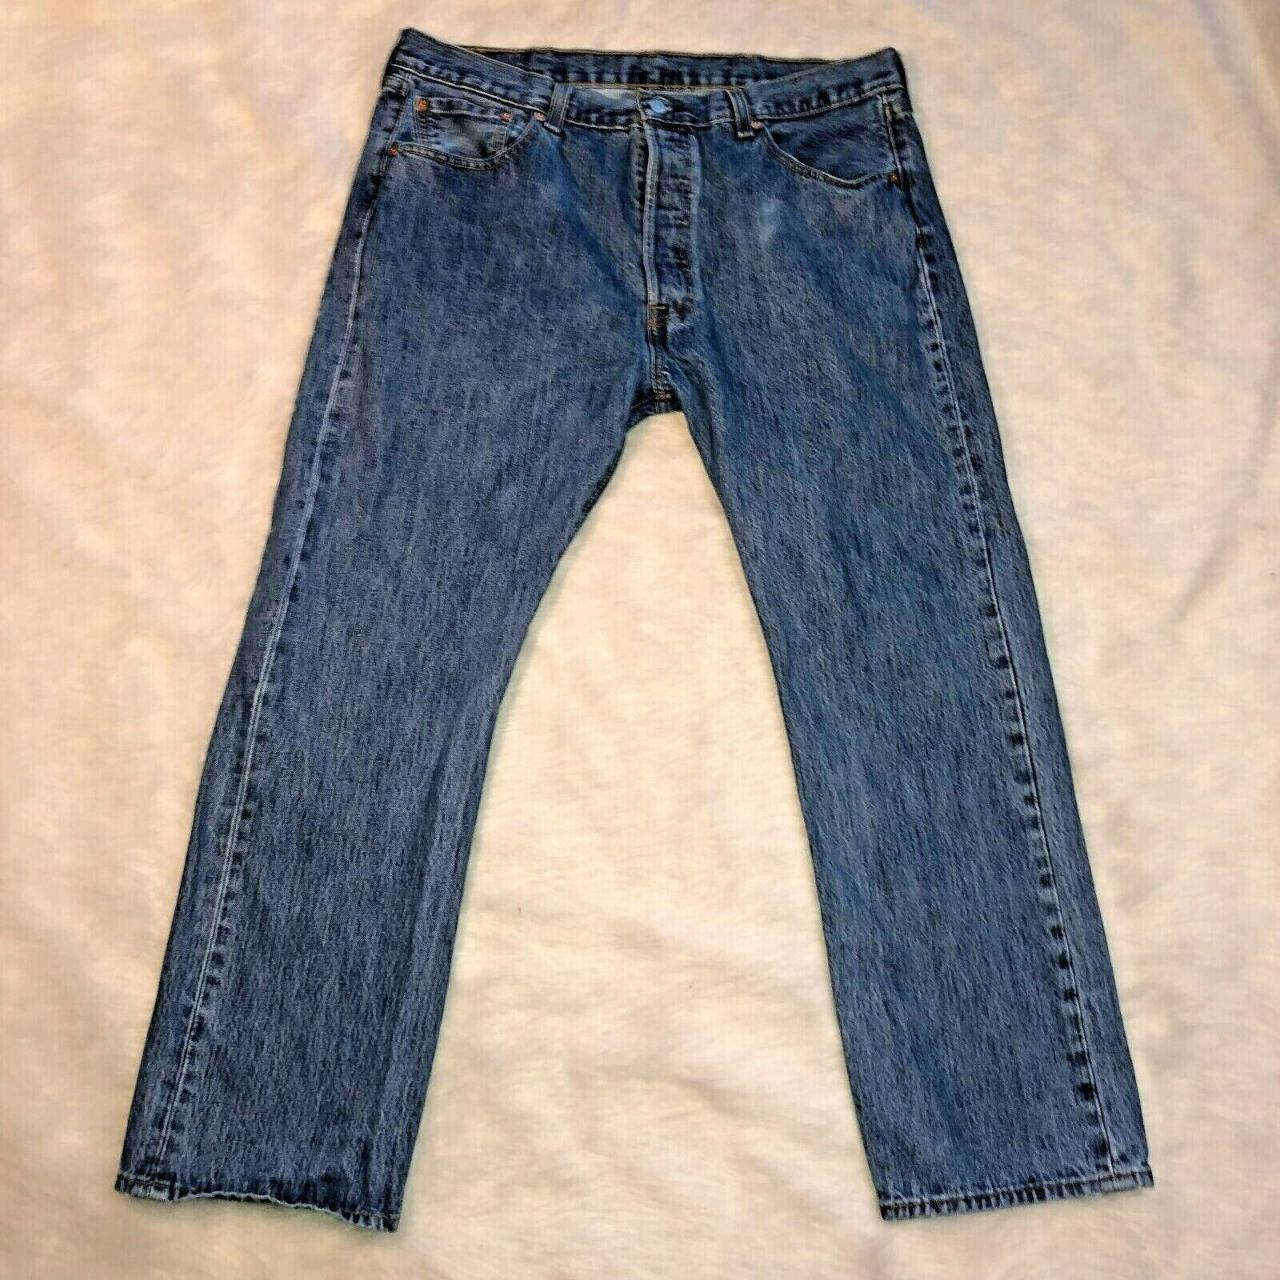 Levi's 501 Jeans Size 38 x 30 Blue Button Fly Levis... - Depop